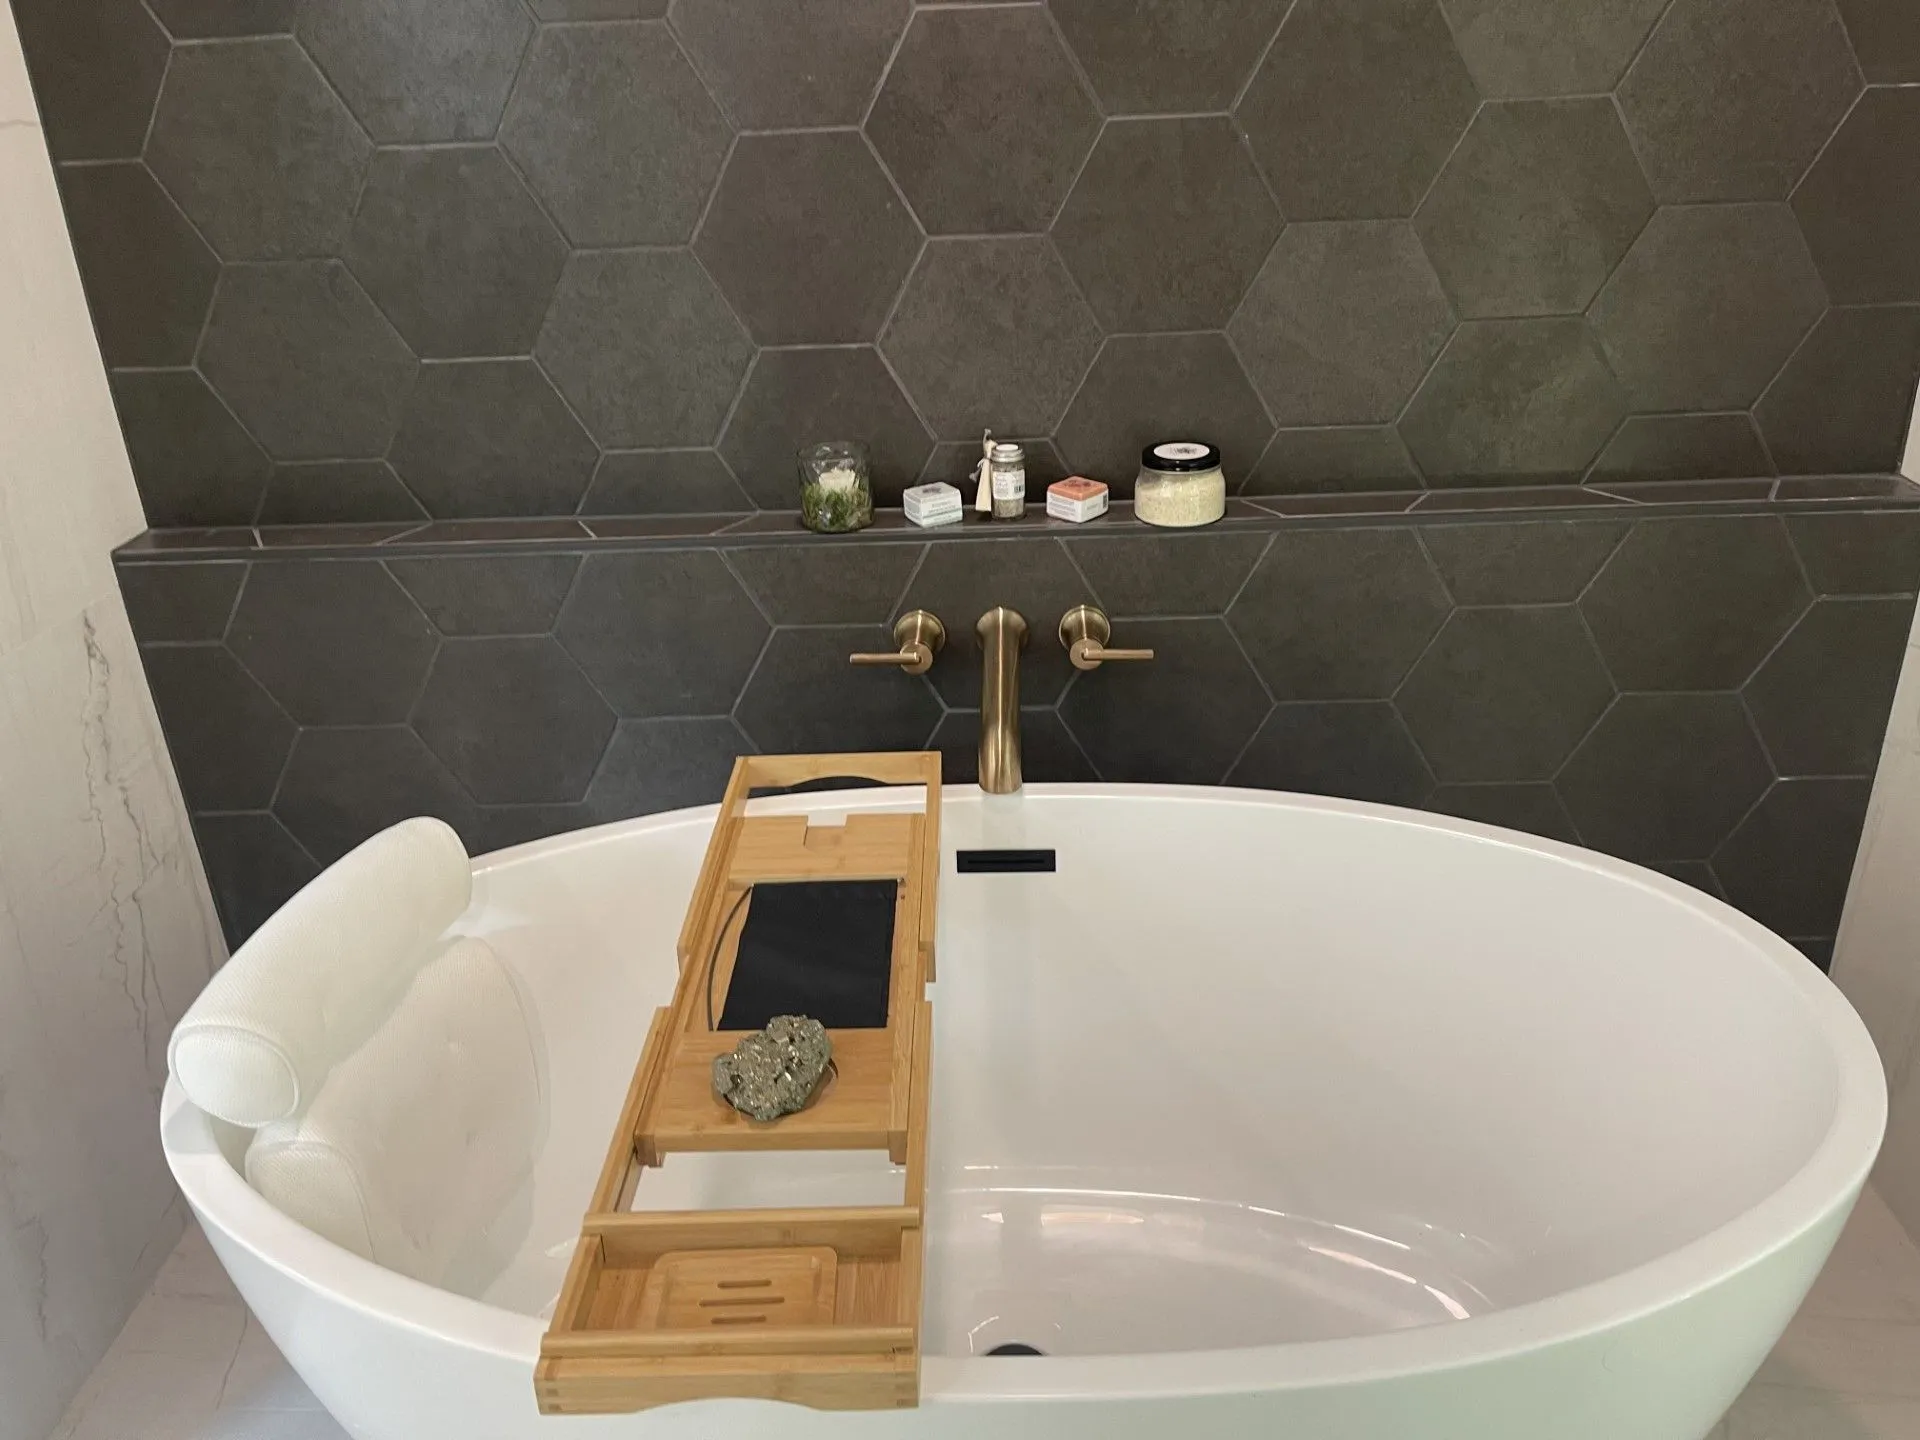 A bath tub with a phone on it